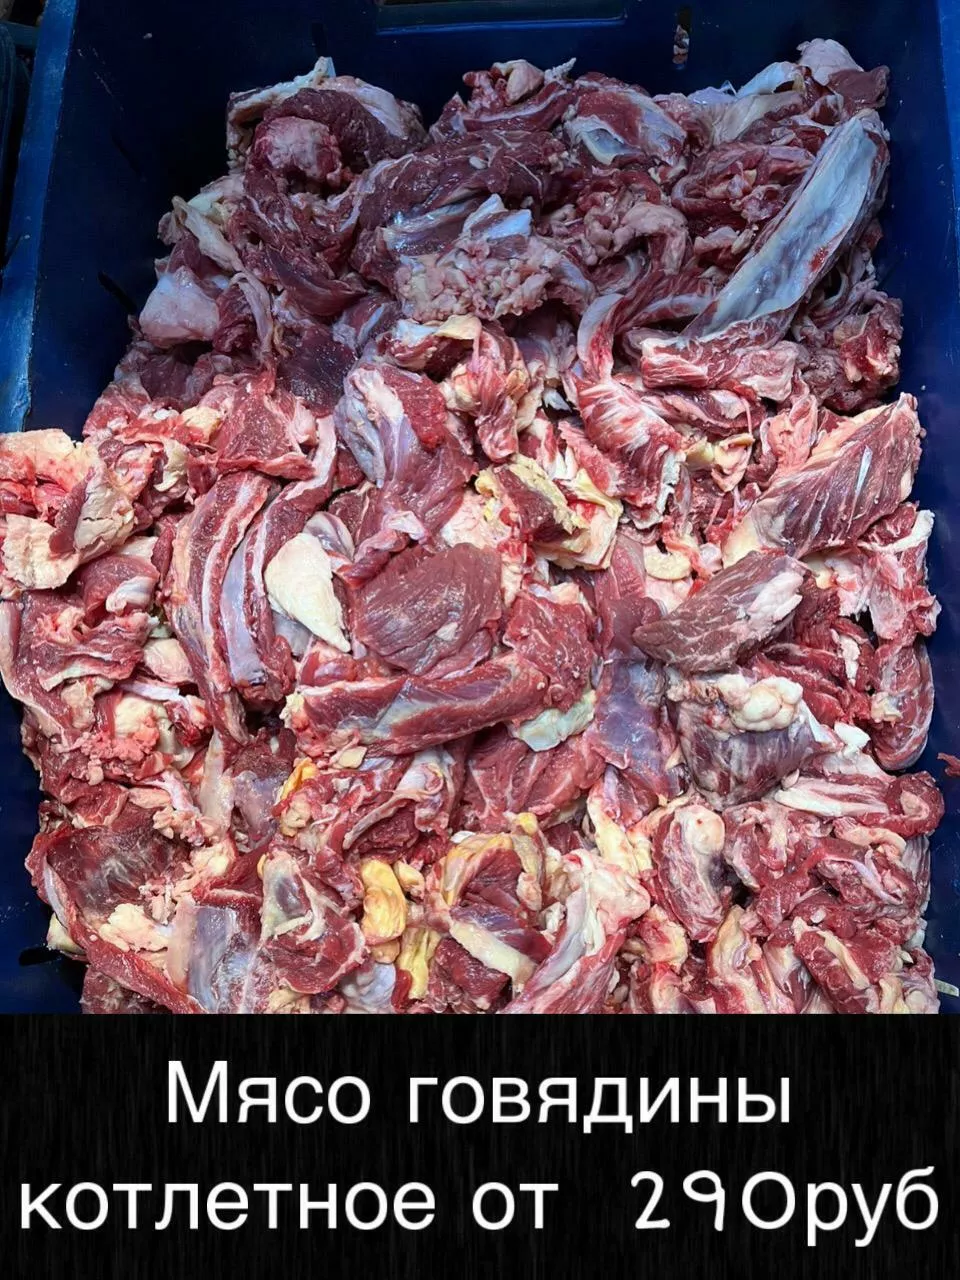 мясо - говядина и др. оптом в Железногорске-Илимском 4